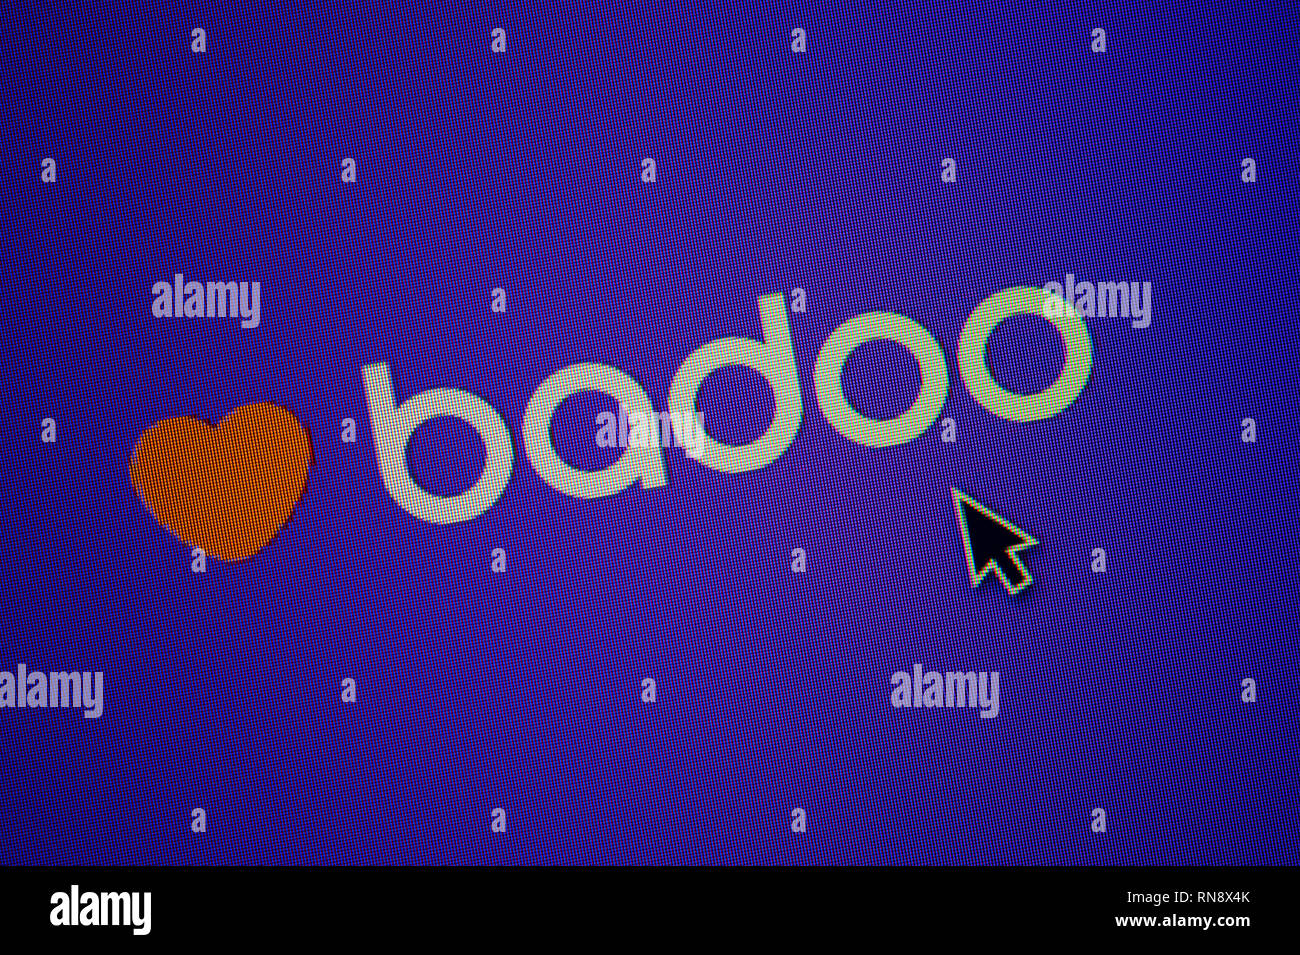 Badoo computer version